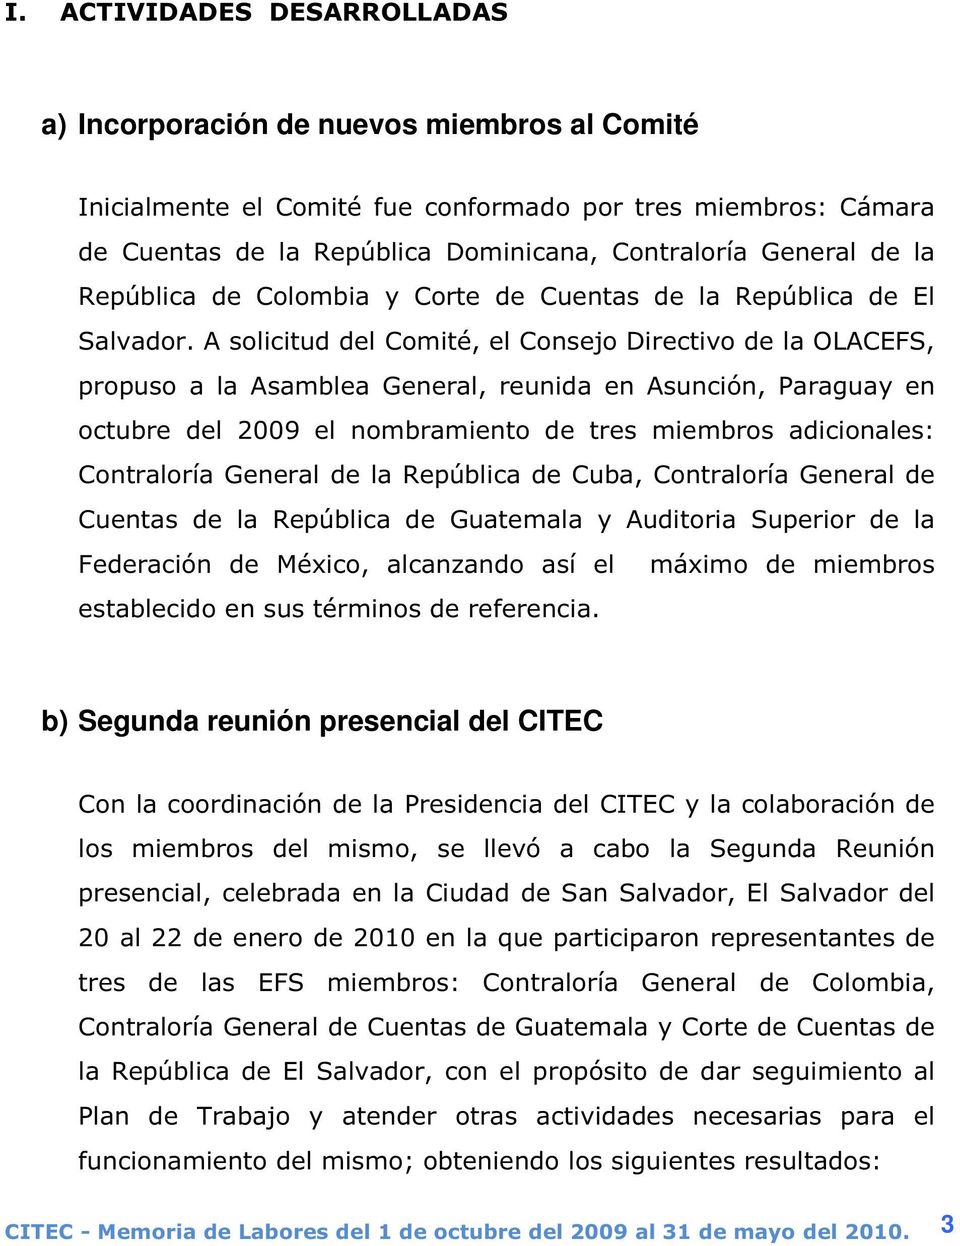 A solicitud del Comité, el Consejo Directivo de la OLACEFS, propuso a la Asamblea General, reunida en Asunción, Paraguay en octubre del 2009 el nombramiento de tres miembros adicionales: Contraloría